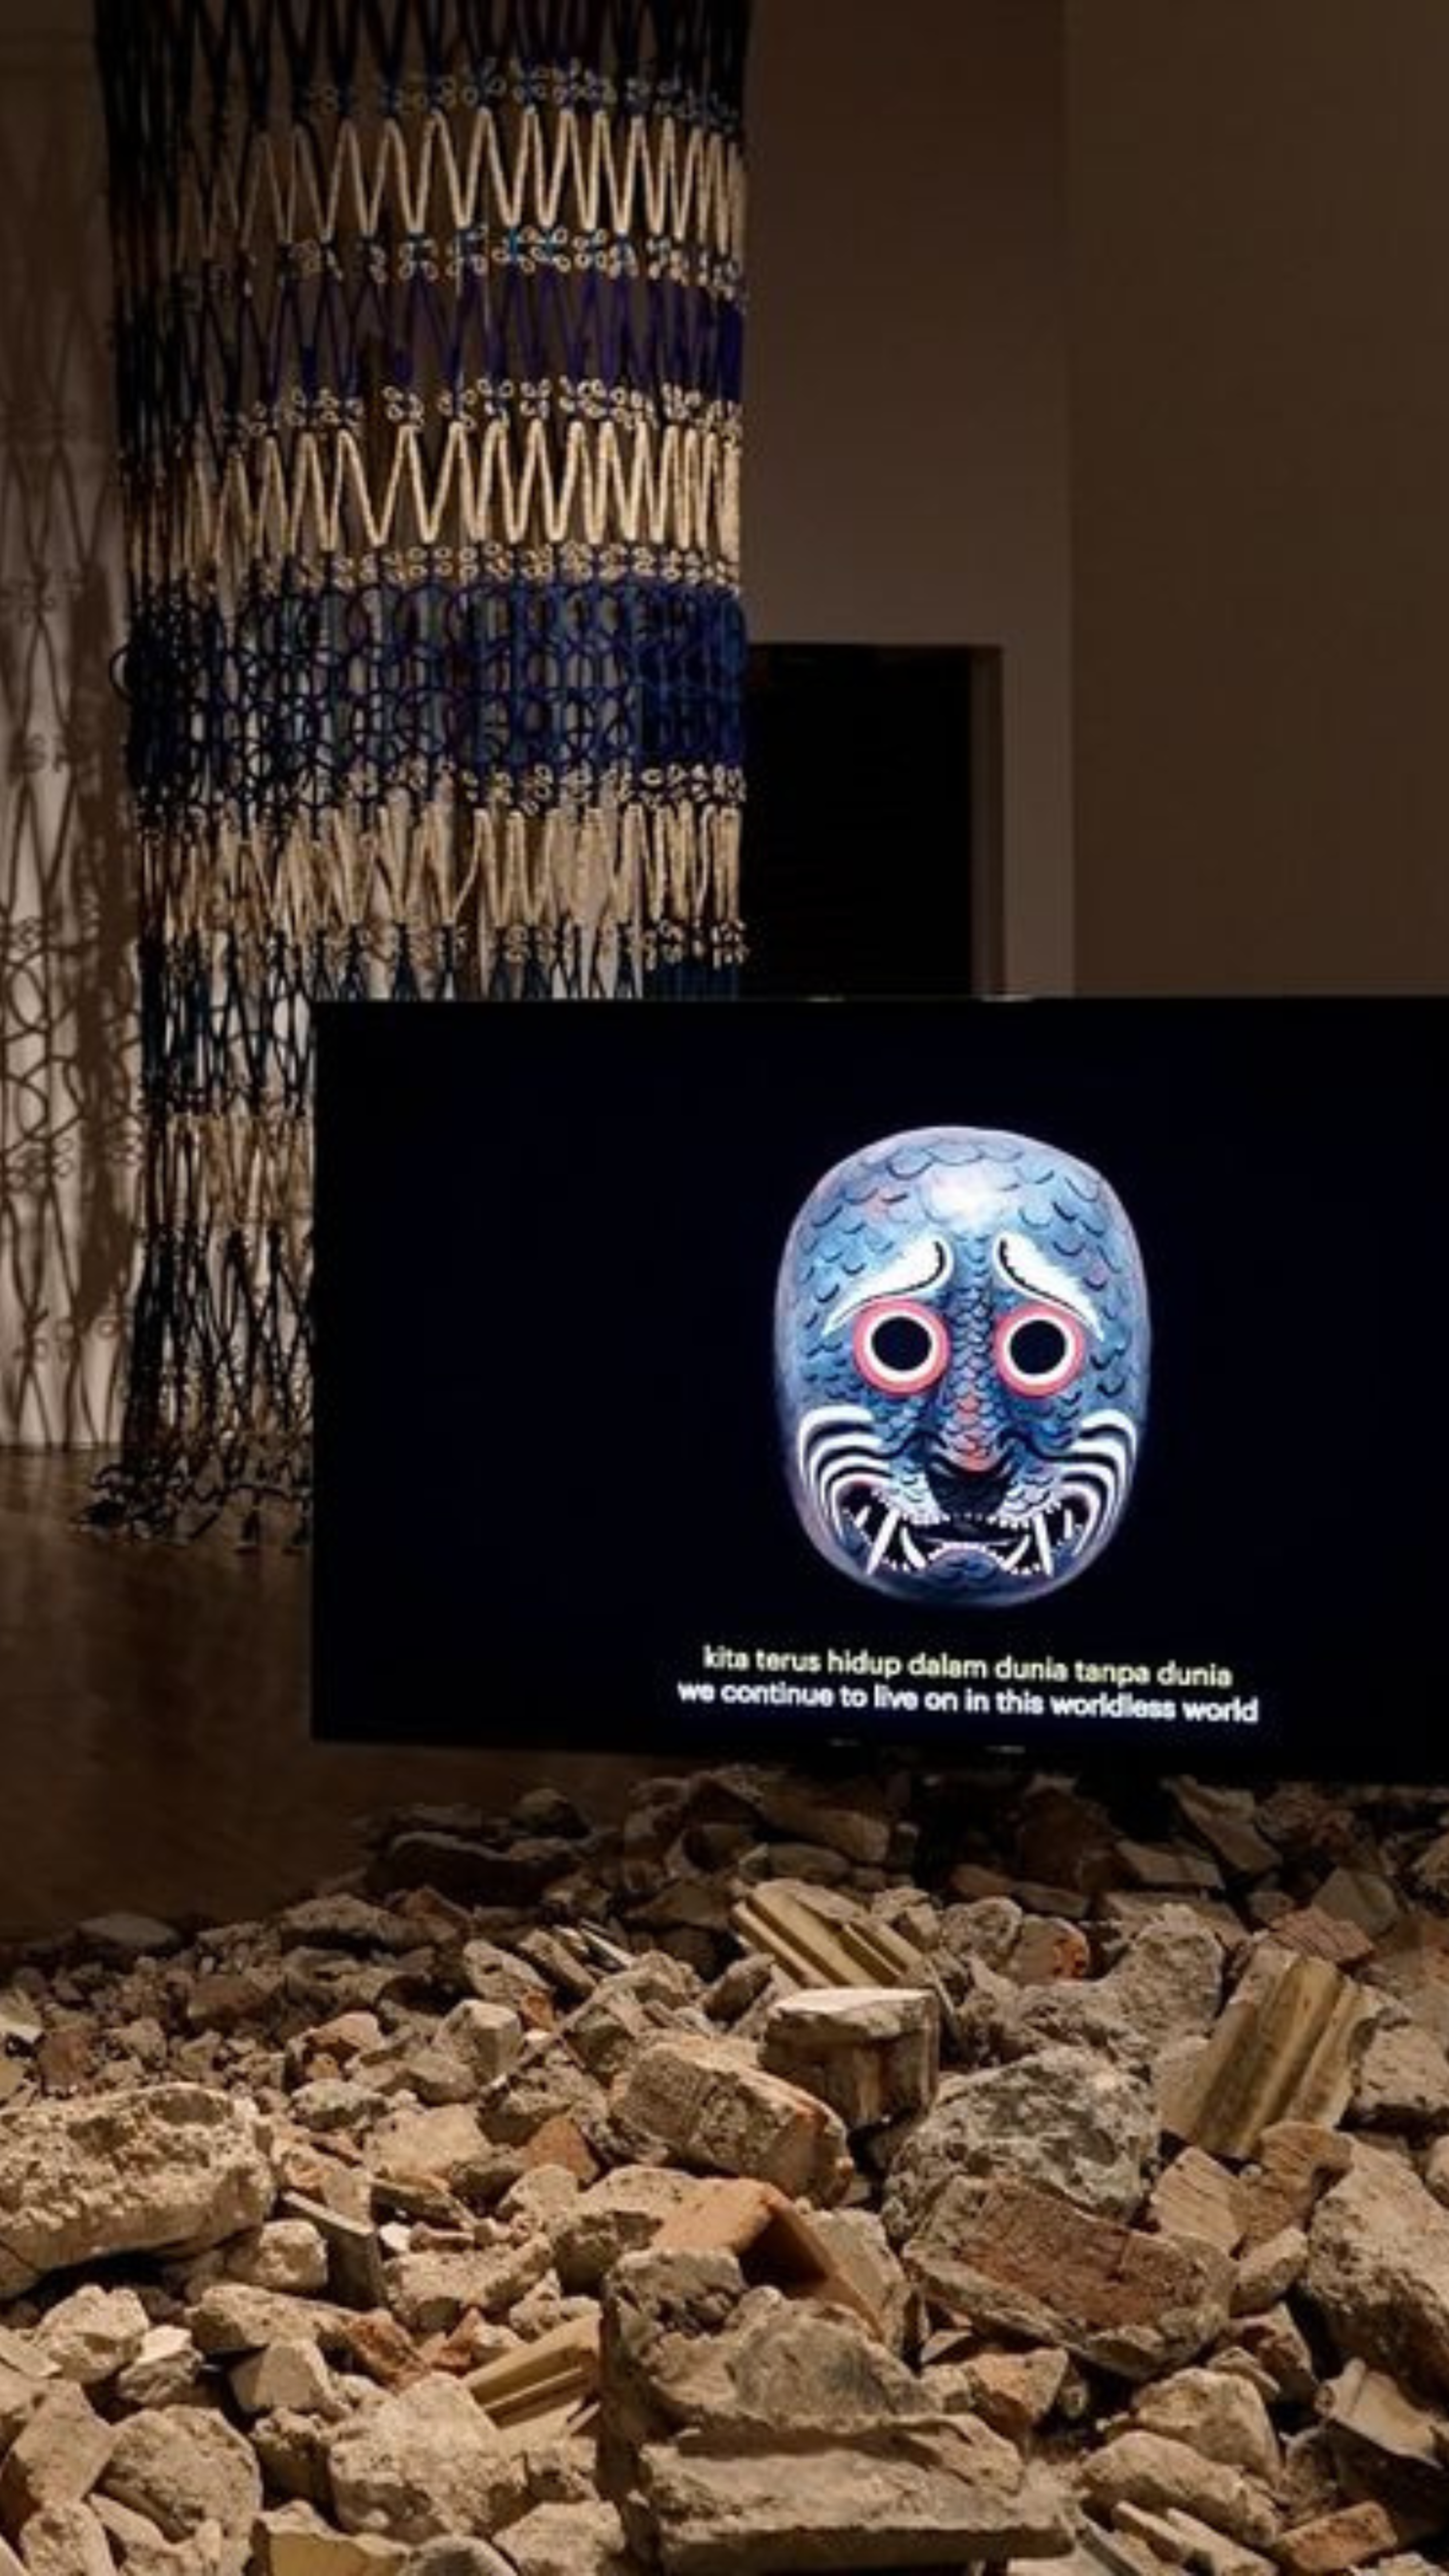 Una instalación artística con una máscara decorada en una pantalla sobre escombros, con una frase en indonesio y su traducción al inglés mostrada.